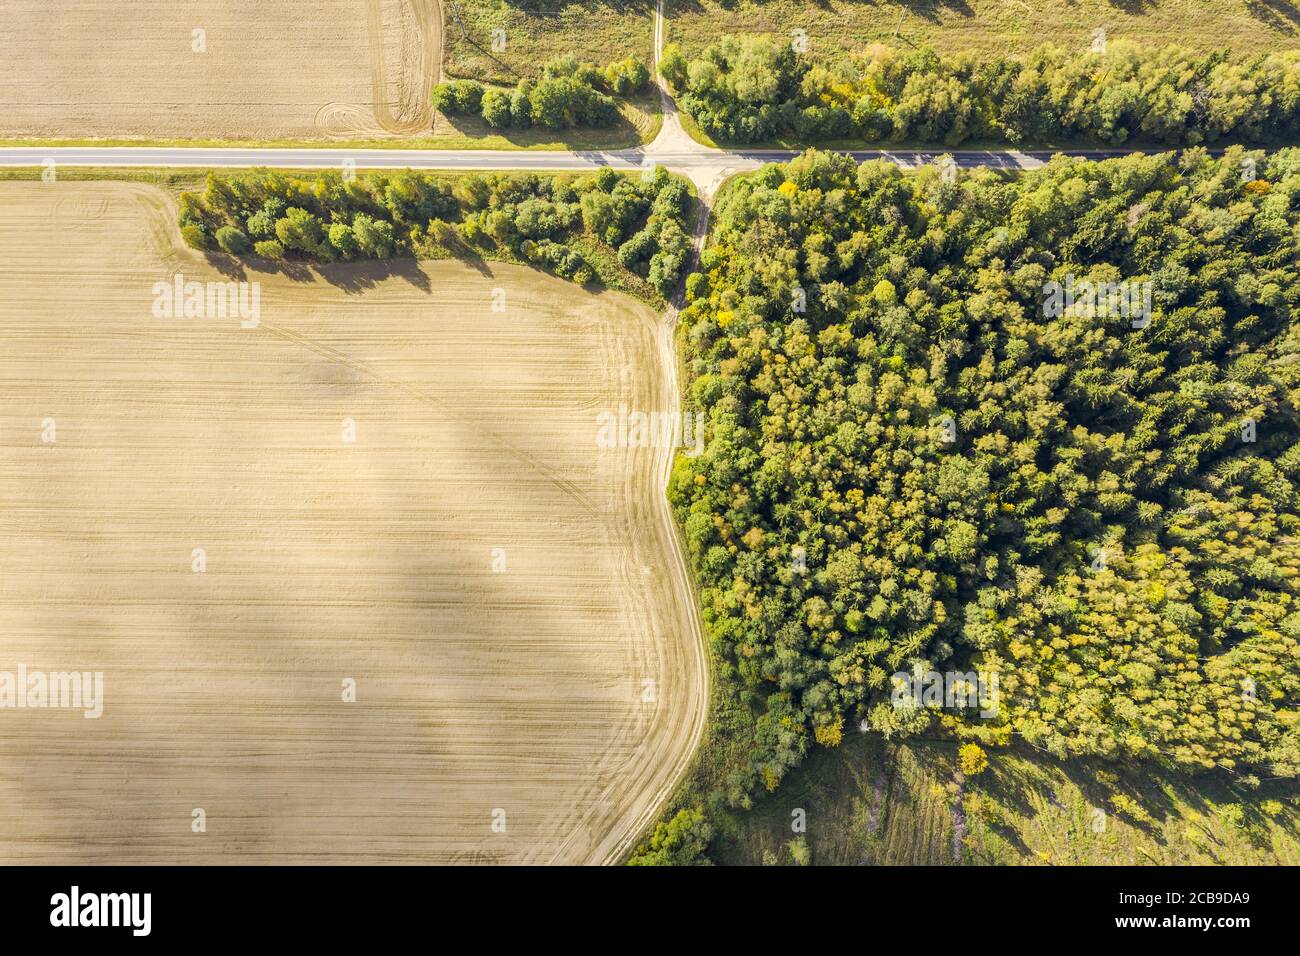 vista aérea desde arriba de la carretera a través de los verdes bosques y campos de verano. paisaje de tierras de cultivo Foto de stock